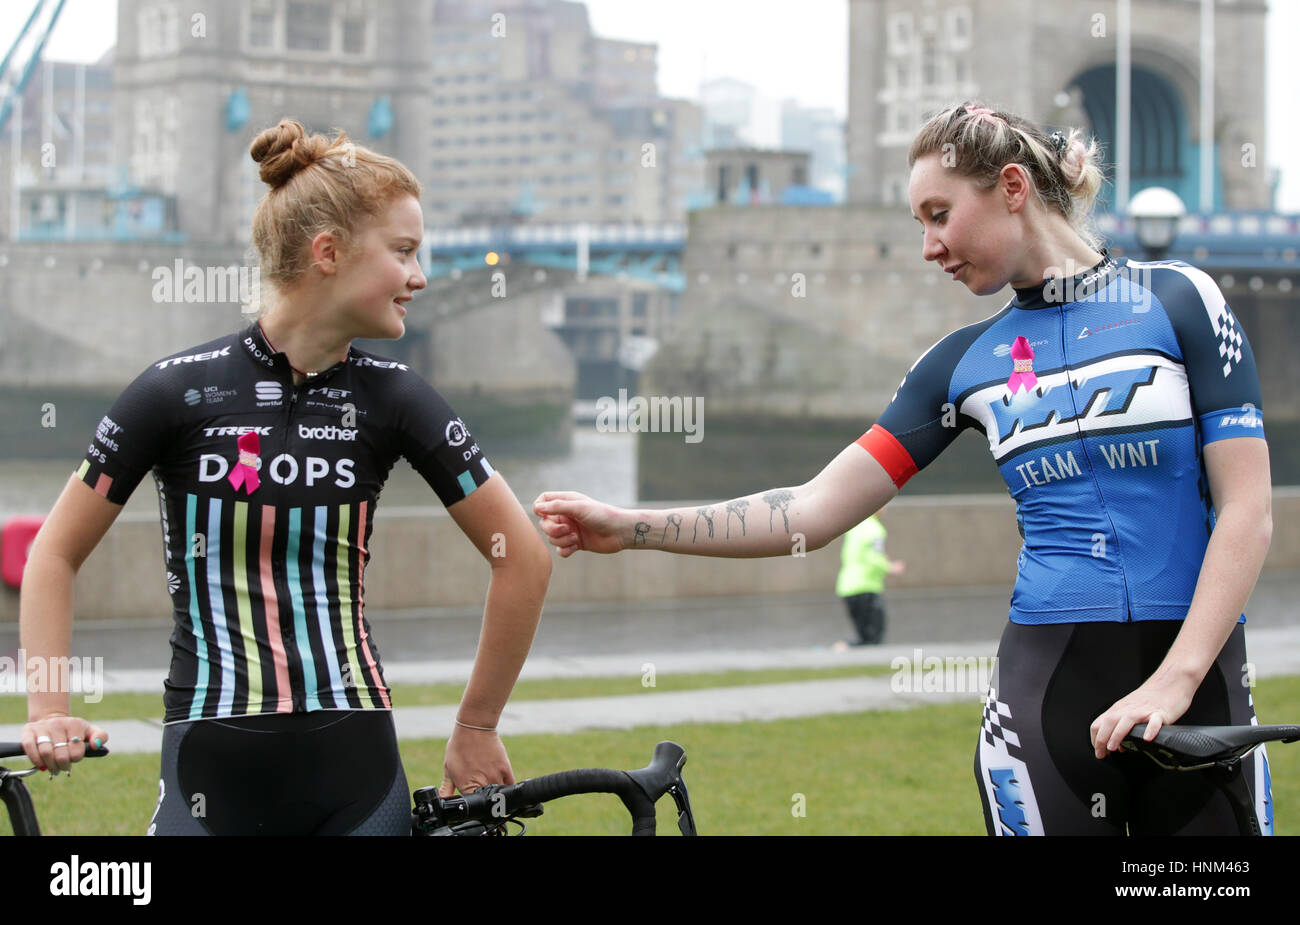 La médaillée olympique de cyclisme Katie Archibald (à droite) et la cycliste professionnelle Abi van Twisk, qui se déplace pour l'équipe de cyclisme Drops, lors d'une séance photo pour découvrir la tournée cycliste féminine de 2017 à Tower Bridge, Londres. Banque D'Images